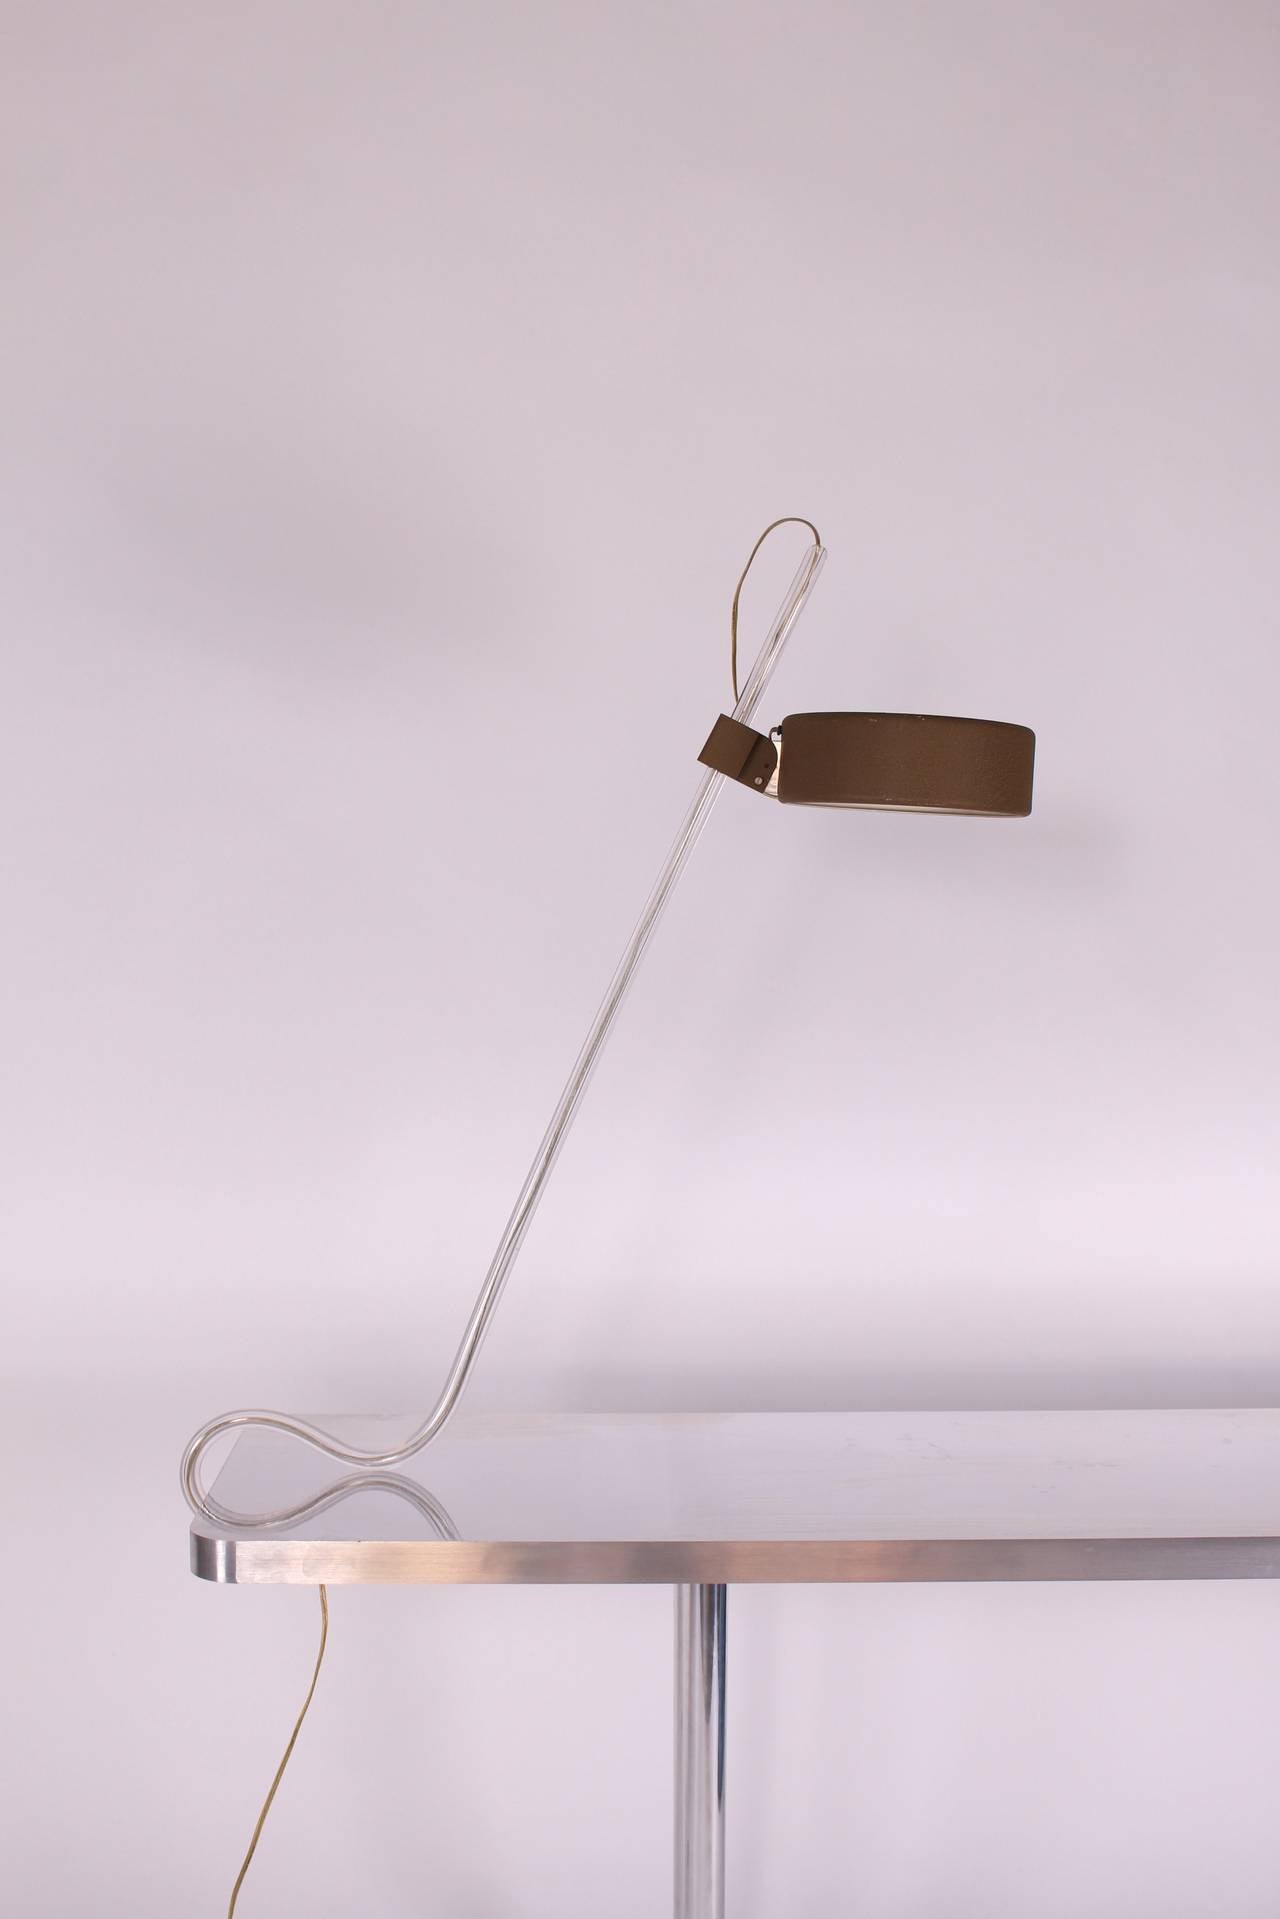 Gino Sarfatti Table Lamp, Model 606 In Excellent Condition In Chicago, IL